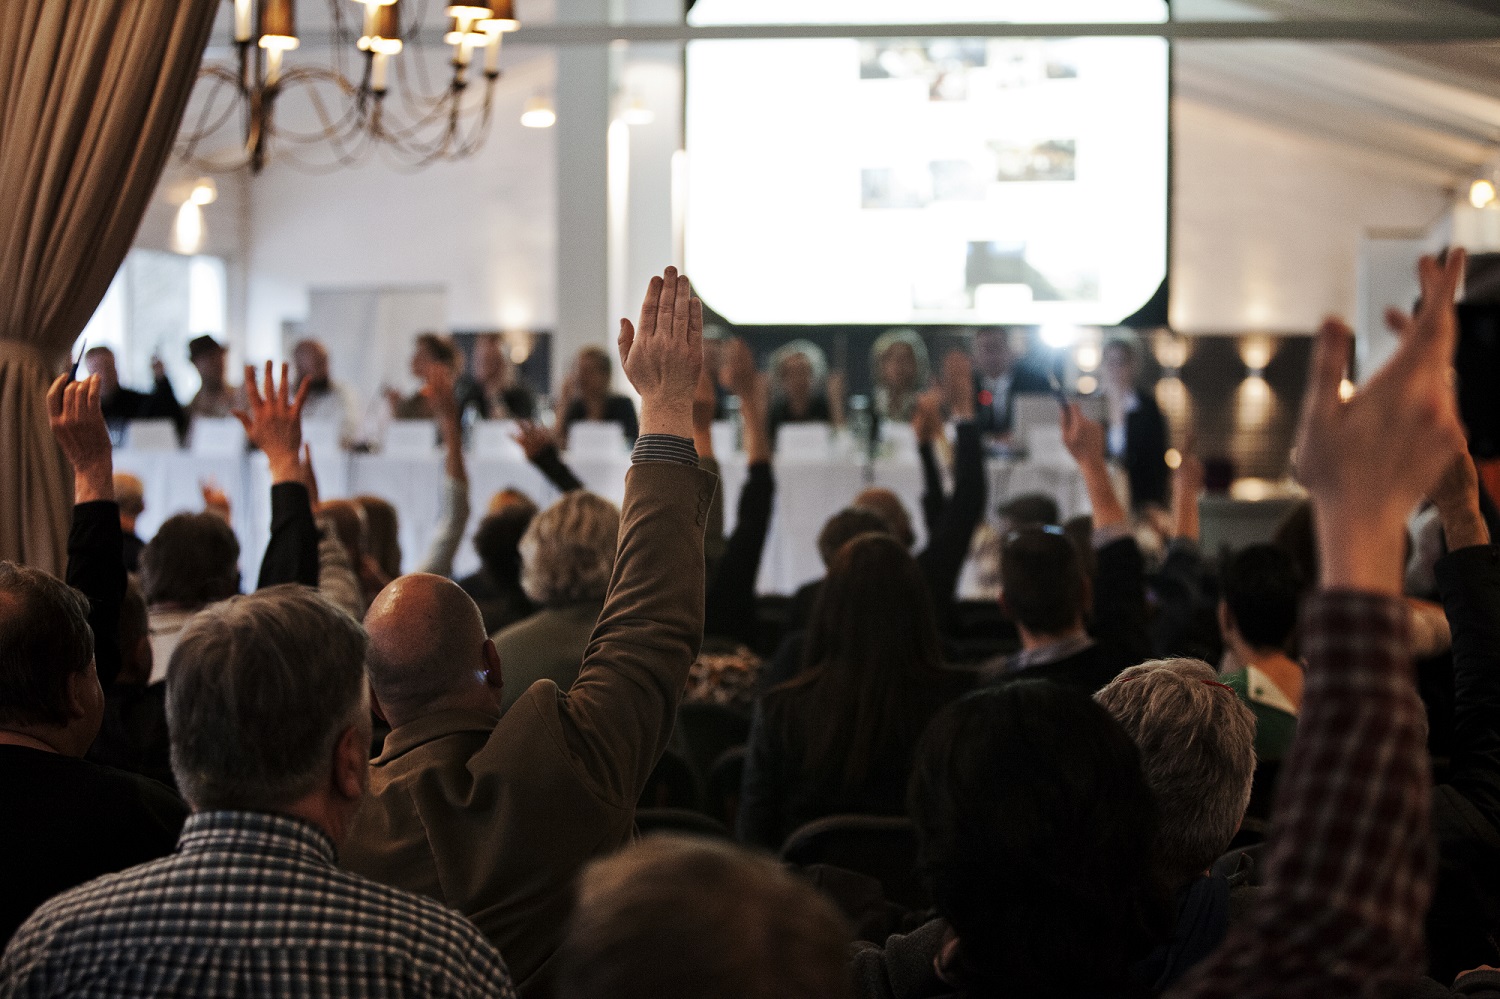 En gruppe mennesker, der deltager i en ekstraordinær generalforsamling, rækker hænderne op i et lokale.